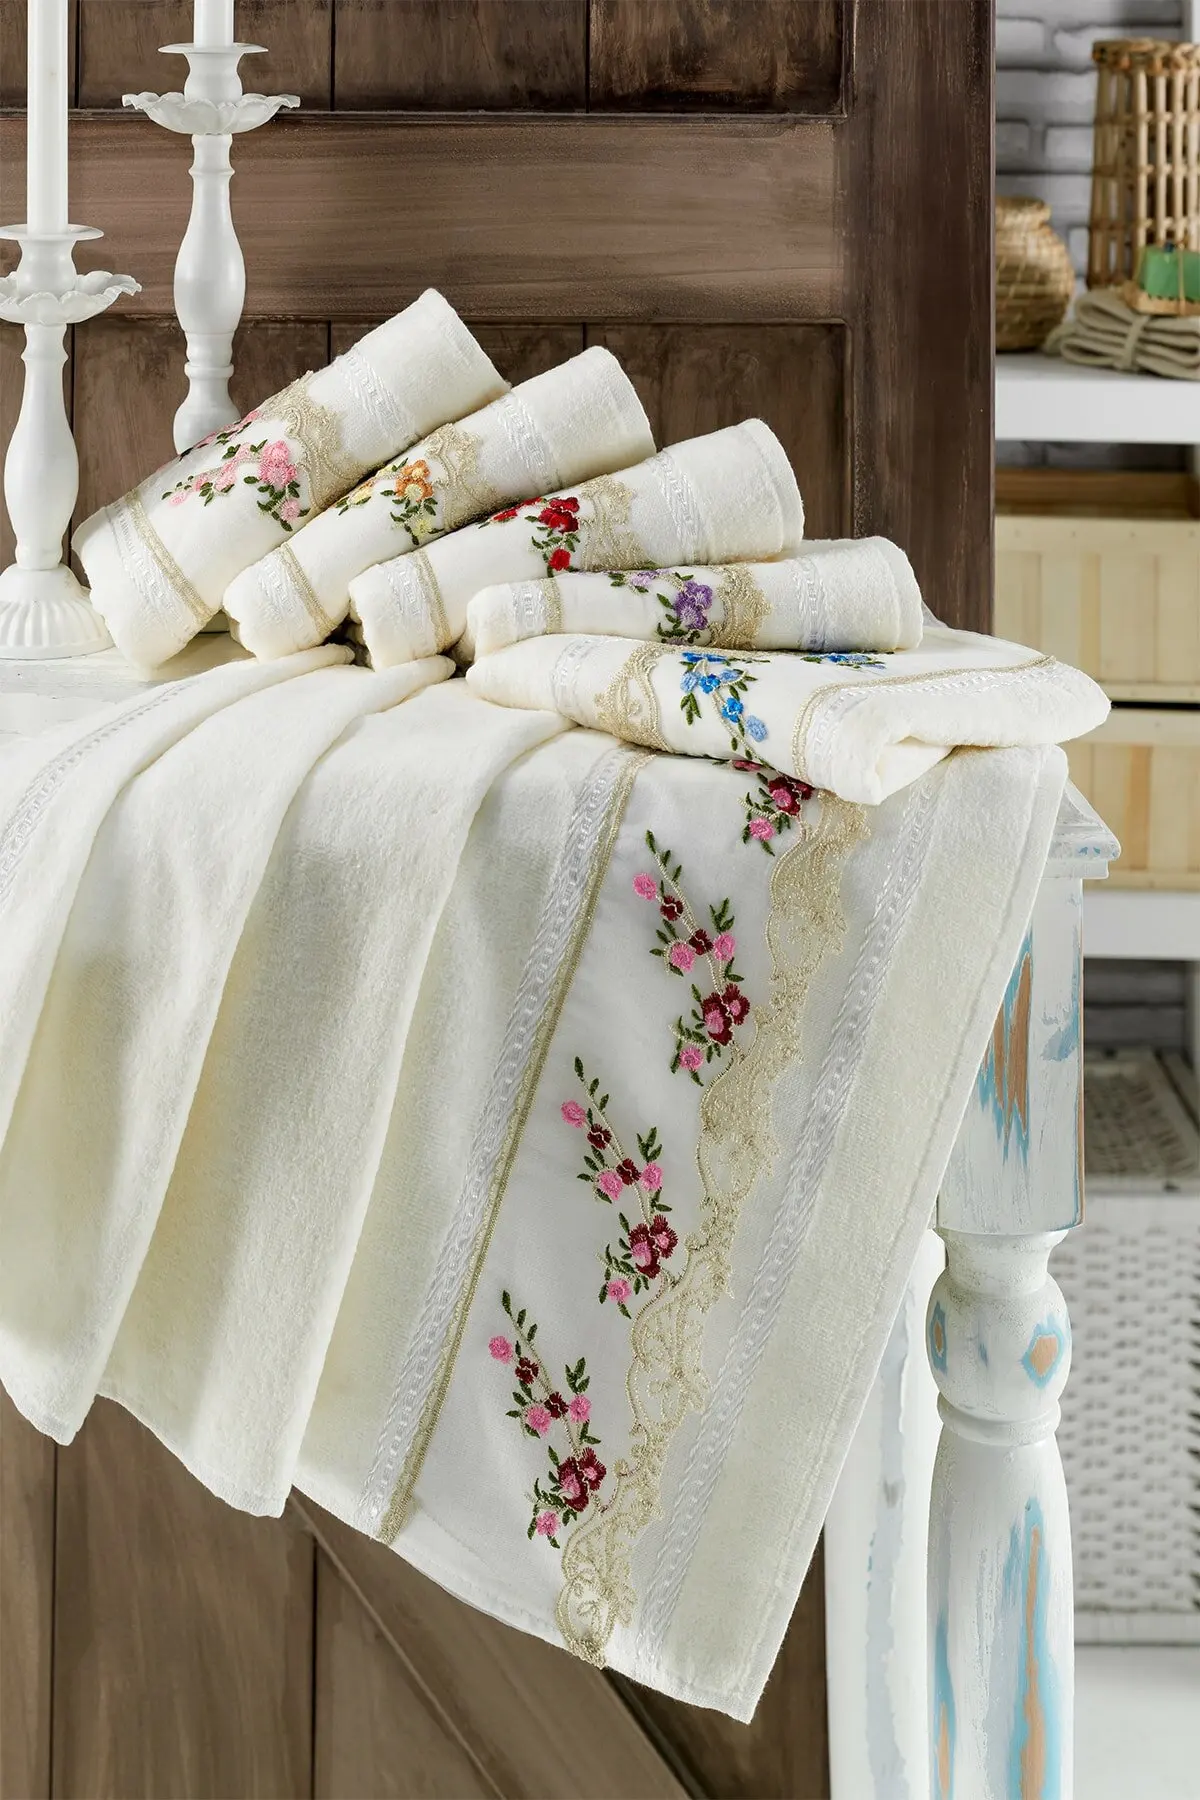 

WONDERFULSOFTTextile 100% модное бархатное полотенце из гипюра 50x90 см 6 шт. Бесплатная доставка